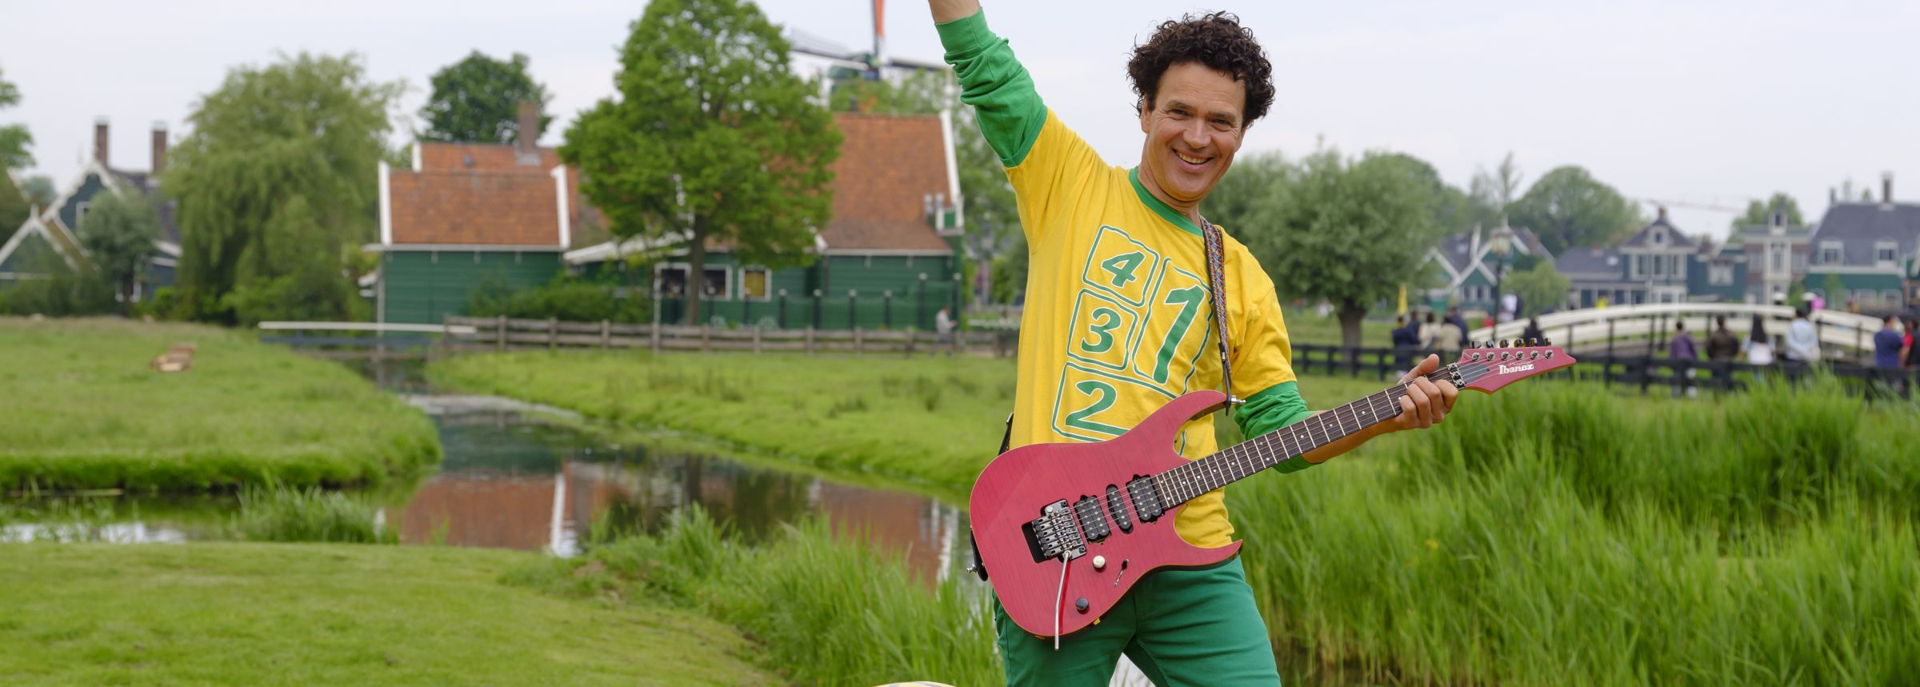 Dirk Scheele zingt oud Hollandse liedjes in een nieuw jasje in zijn voorstelling In Holland staat een huis